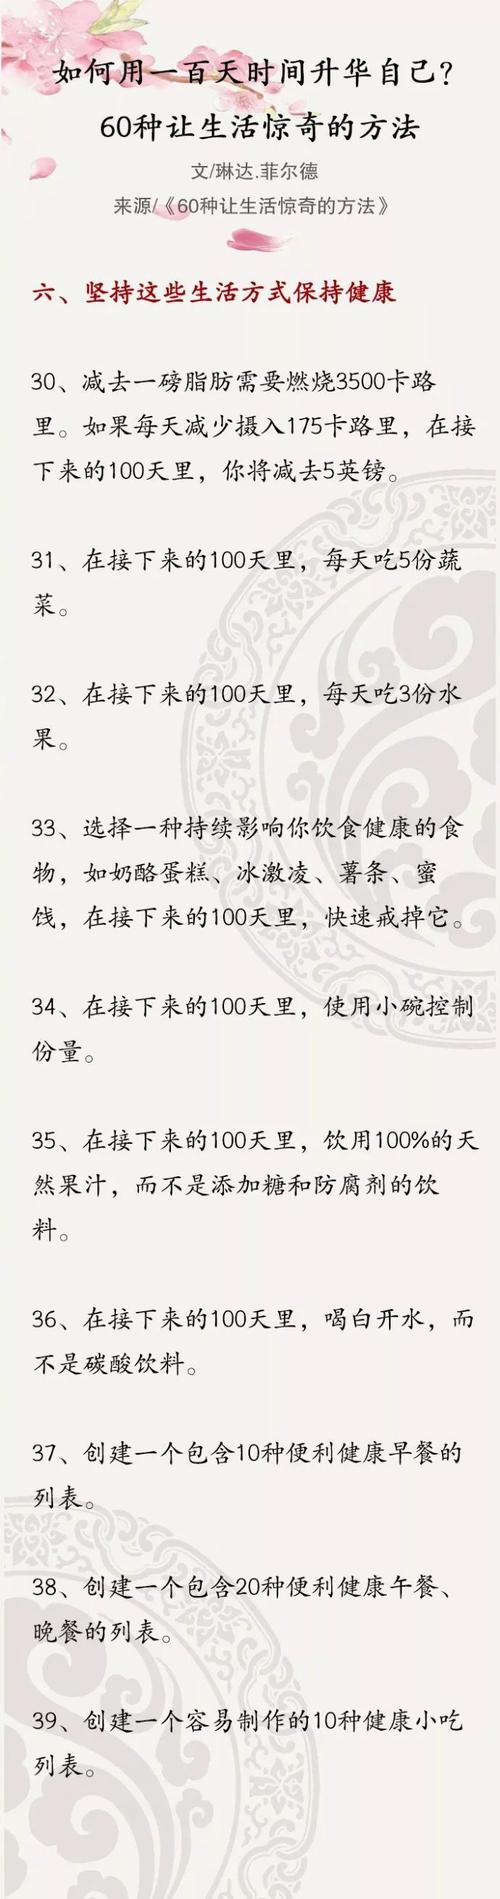 2015年北京学院入学考试组成：如果我与英雄生活在我的心中